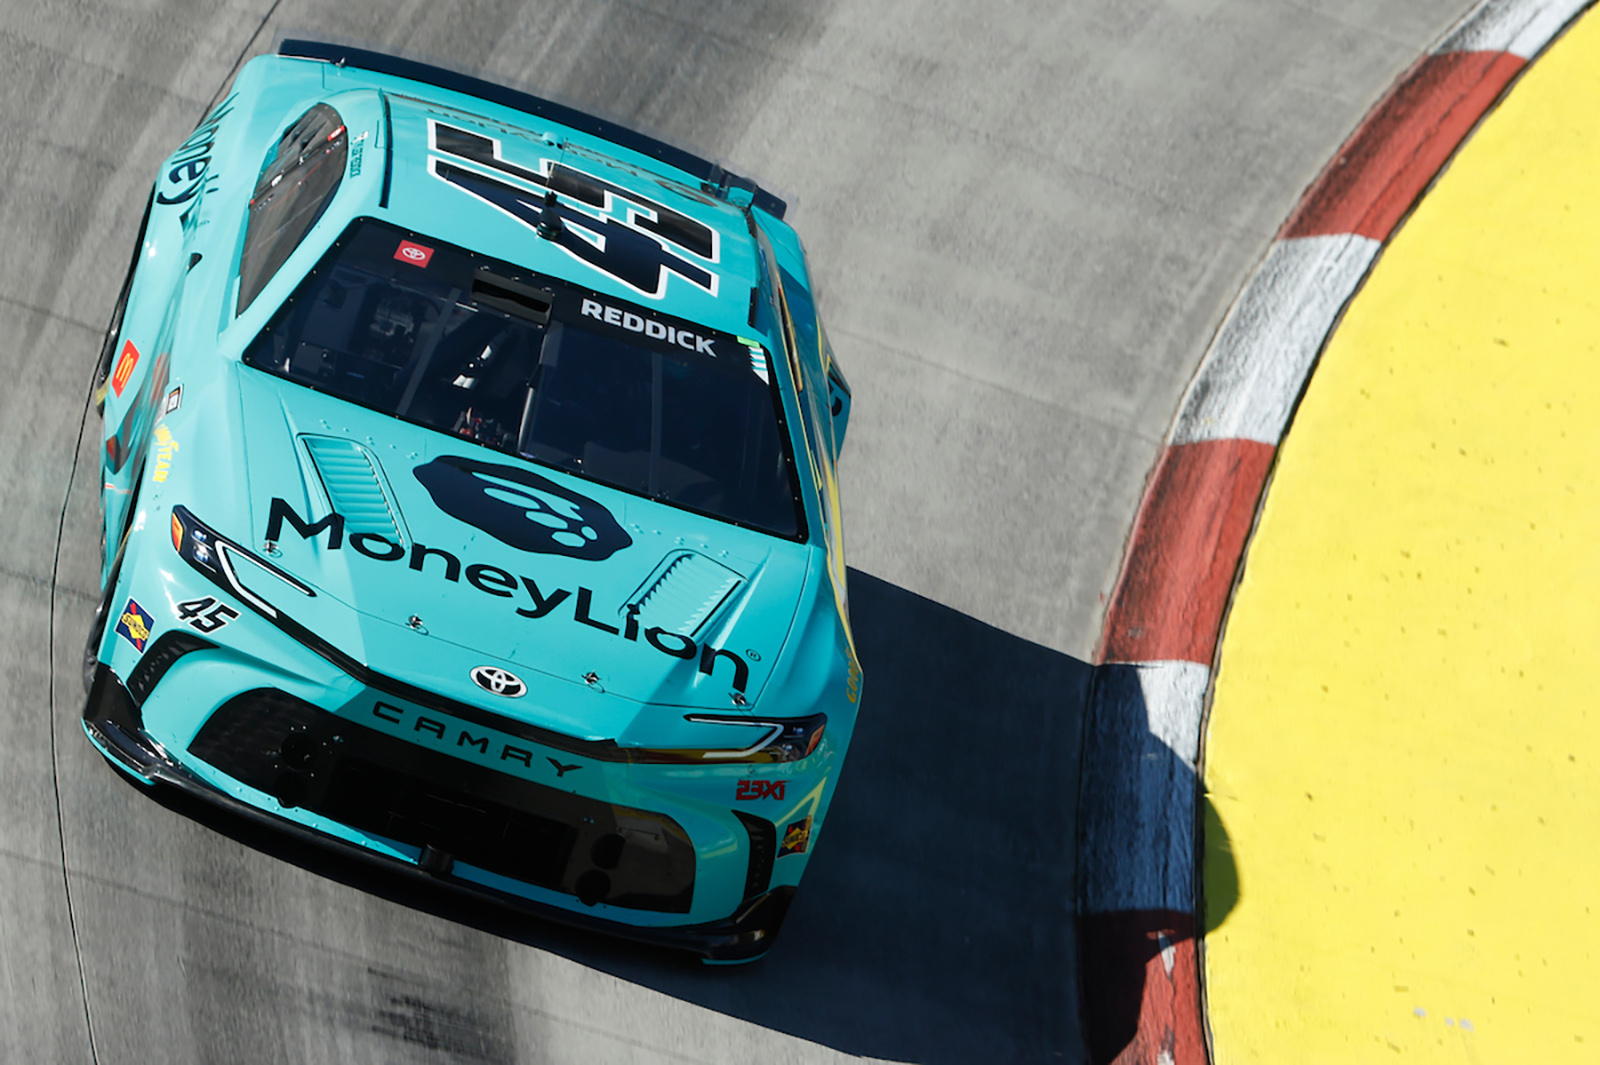 Tyler Reddick 2024 MoneyLion paint scheme 23XI Racing NASCAR Cup Series